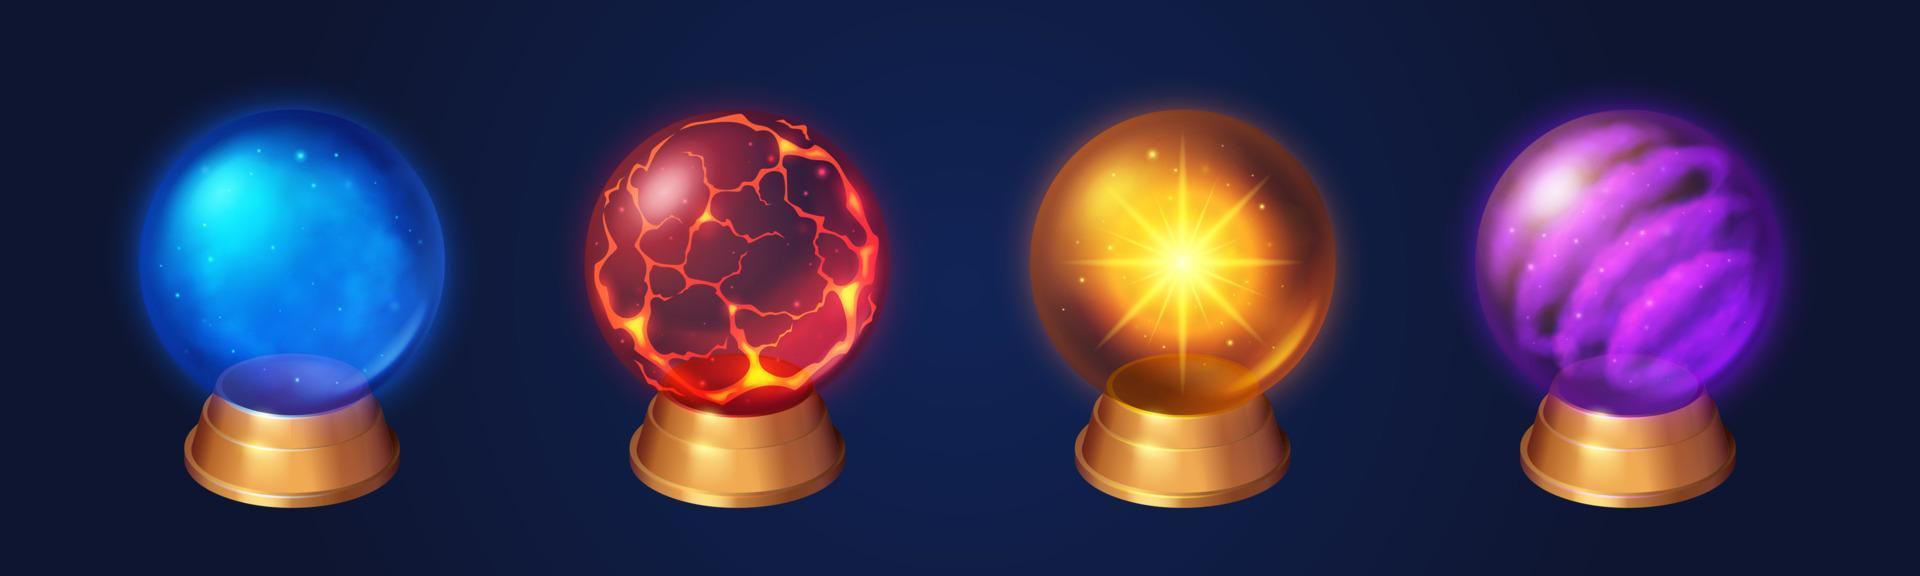 globos de cristal, esferas mágicas de brujas o hechiceros vector